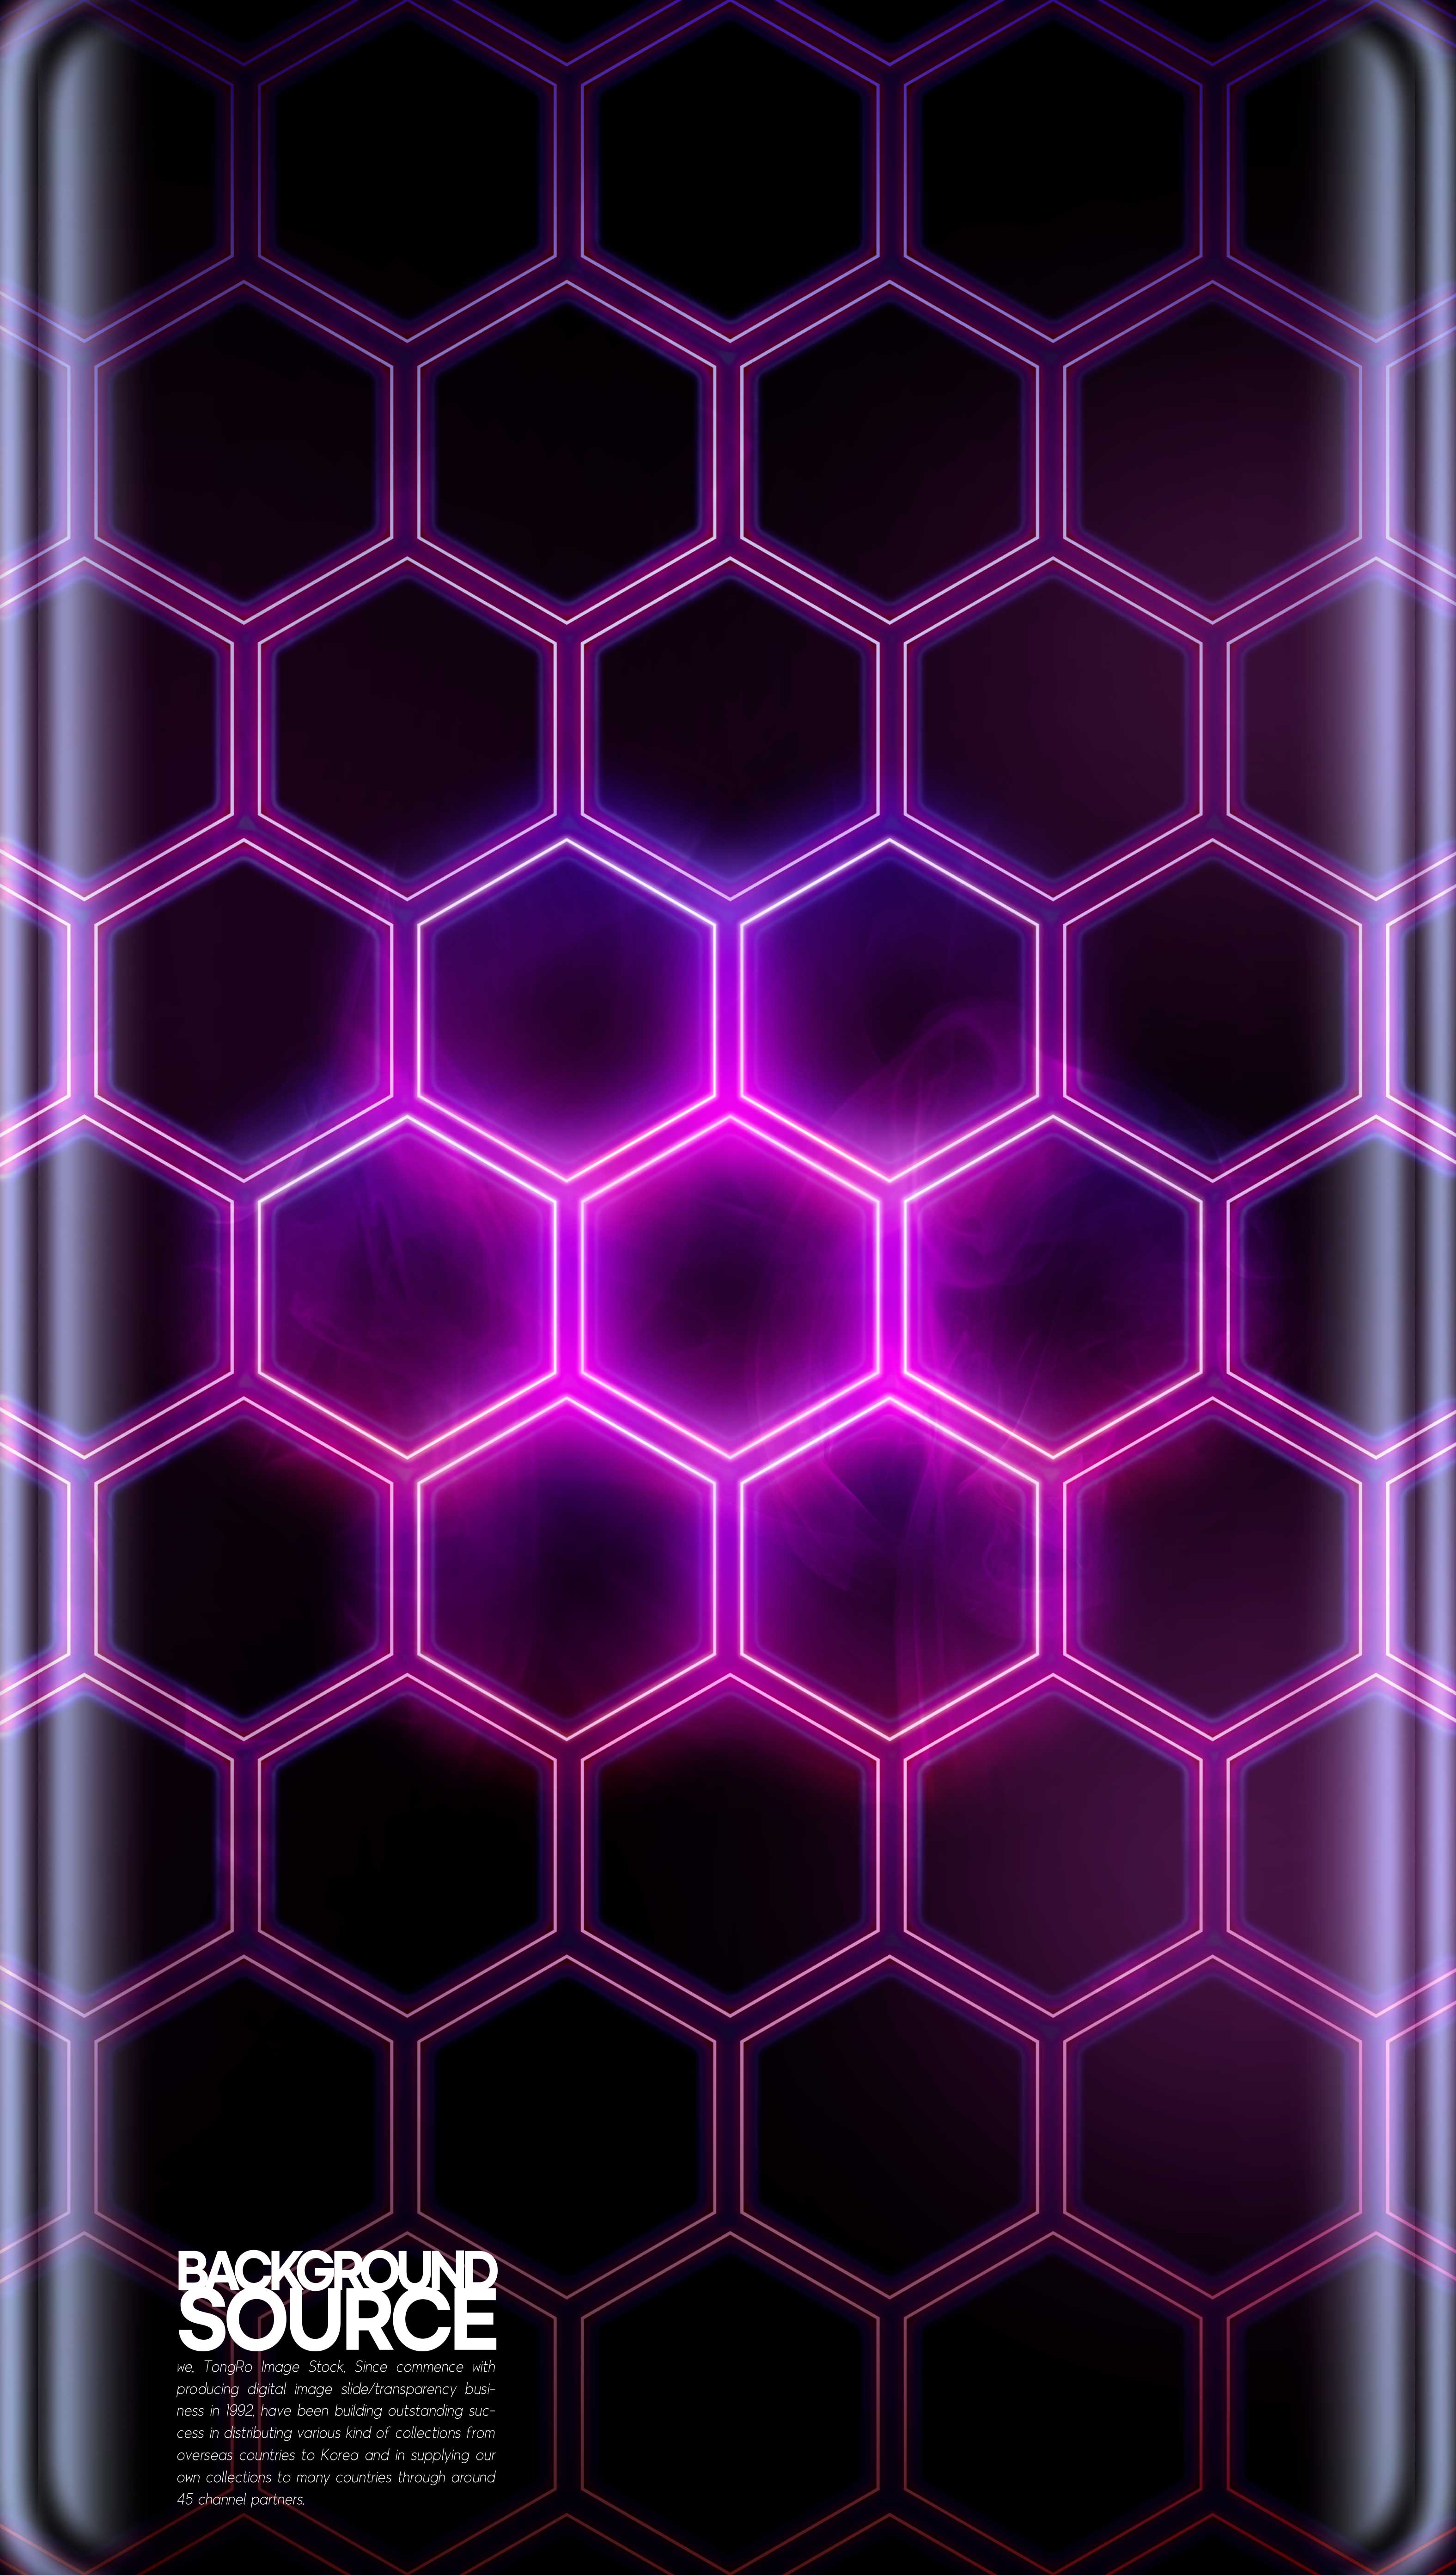 壁纸图片深紫色蜂巢曲屏psd素材设计素材模板